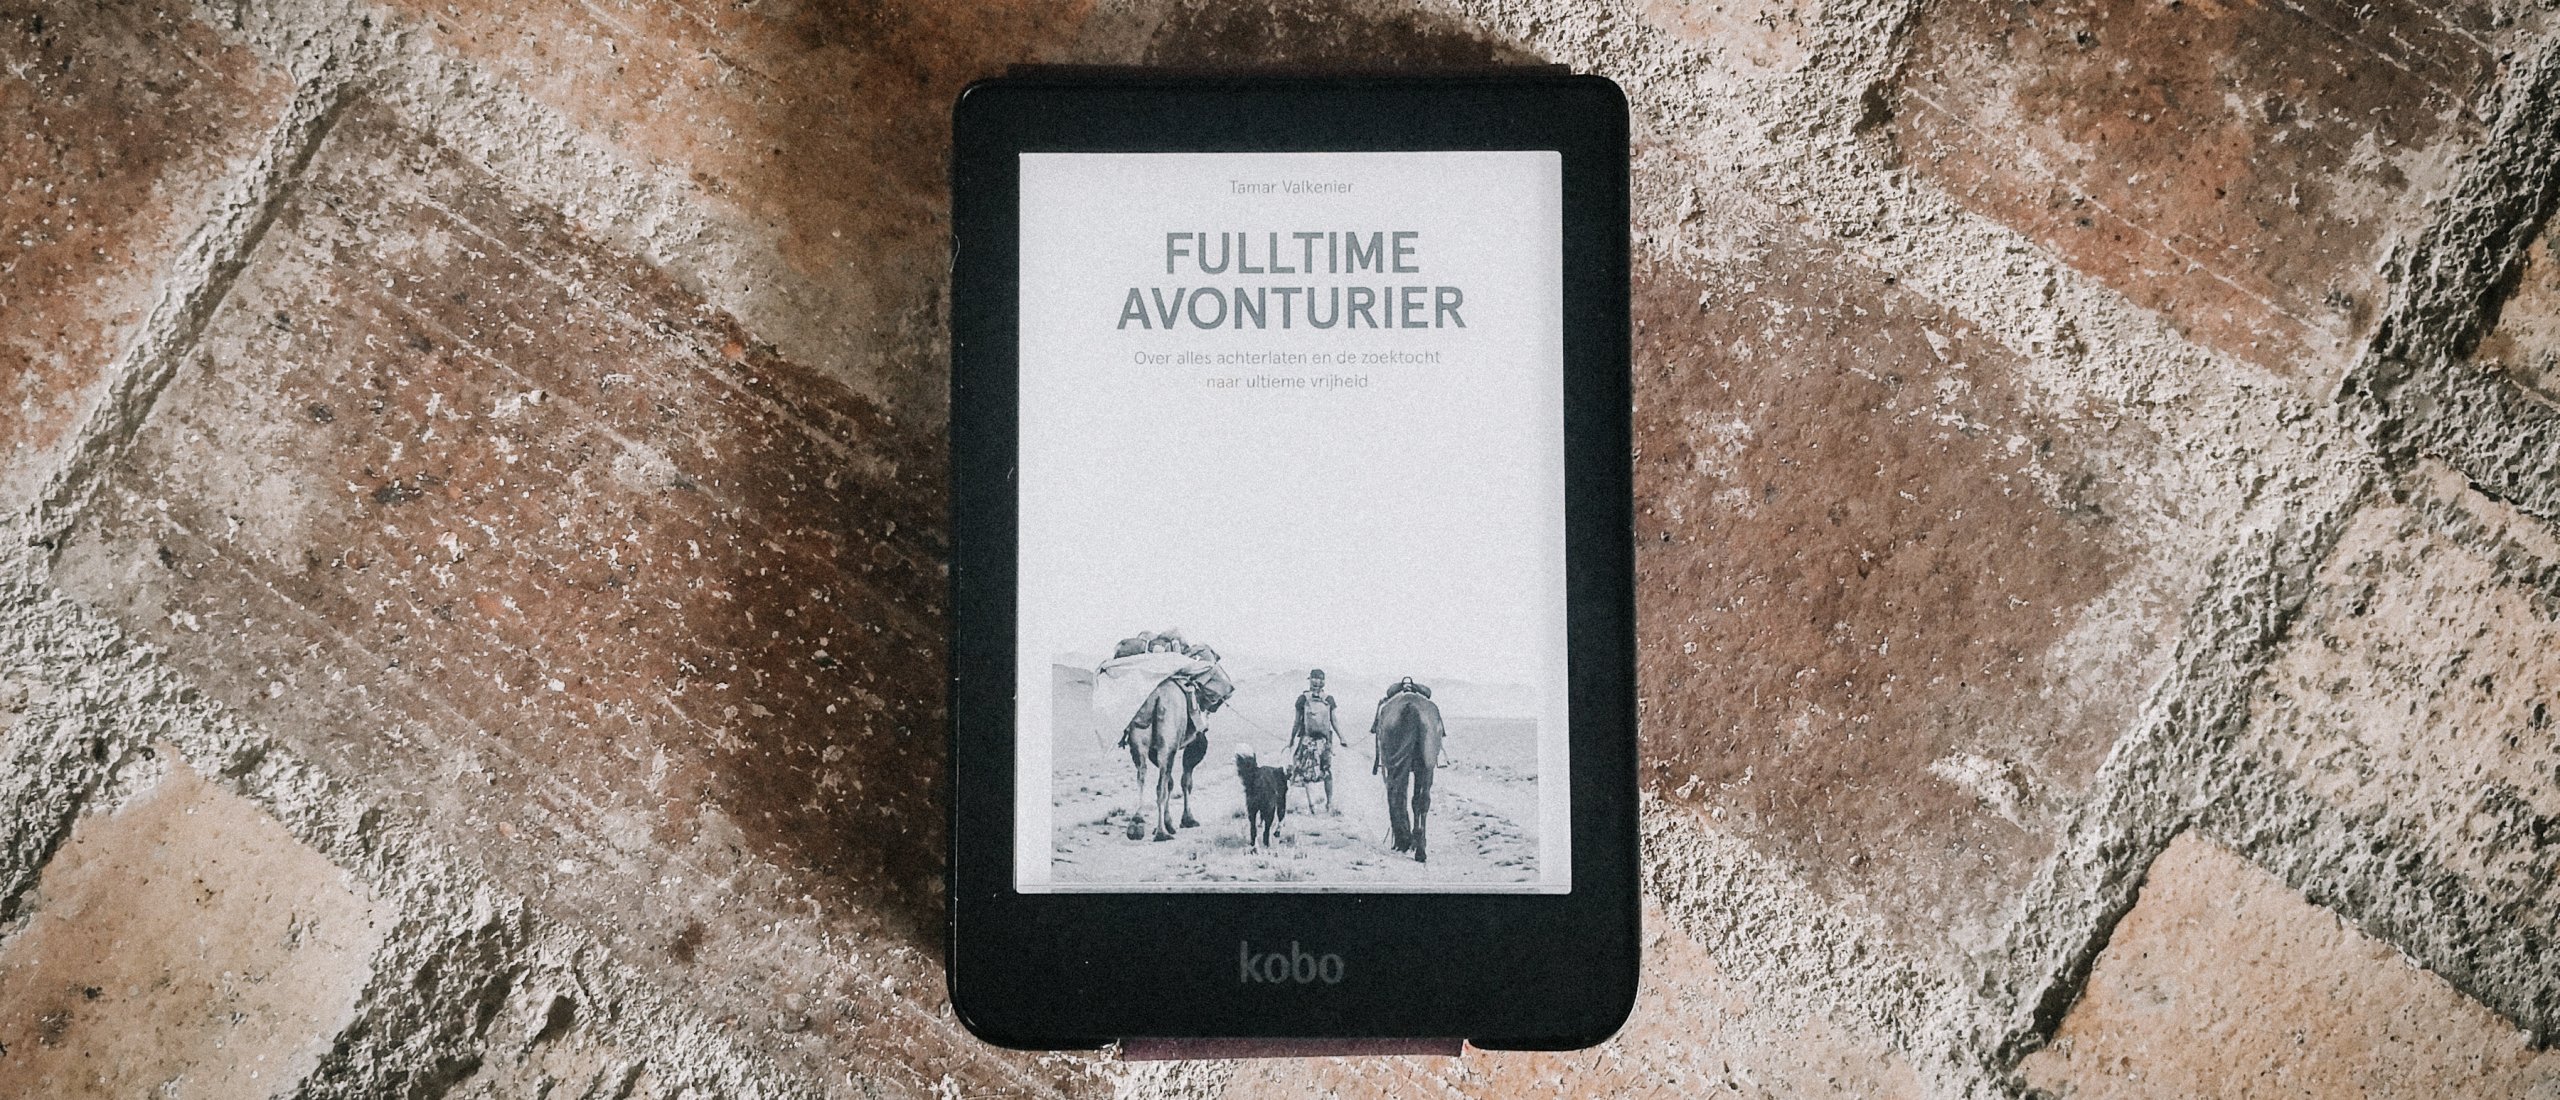 8 boeken over avontuur die je gratis kunt lezen met Kobo Plus